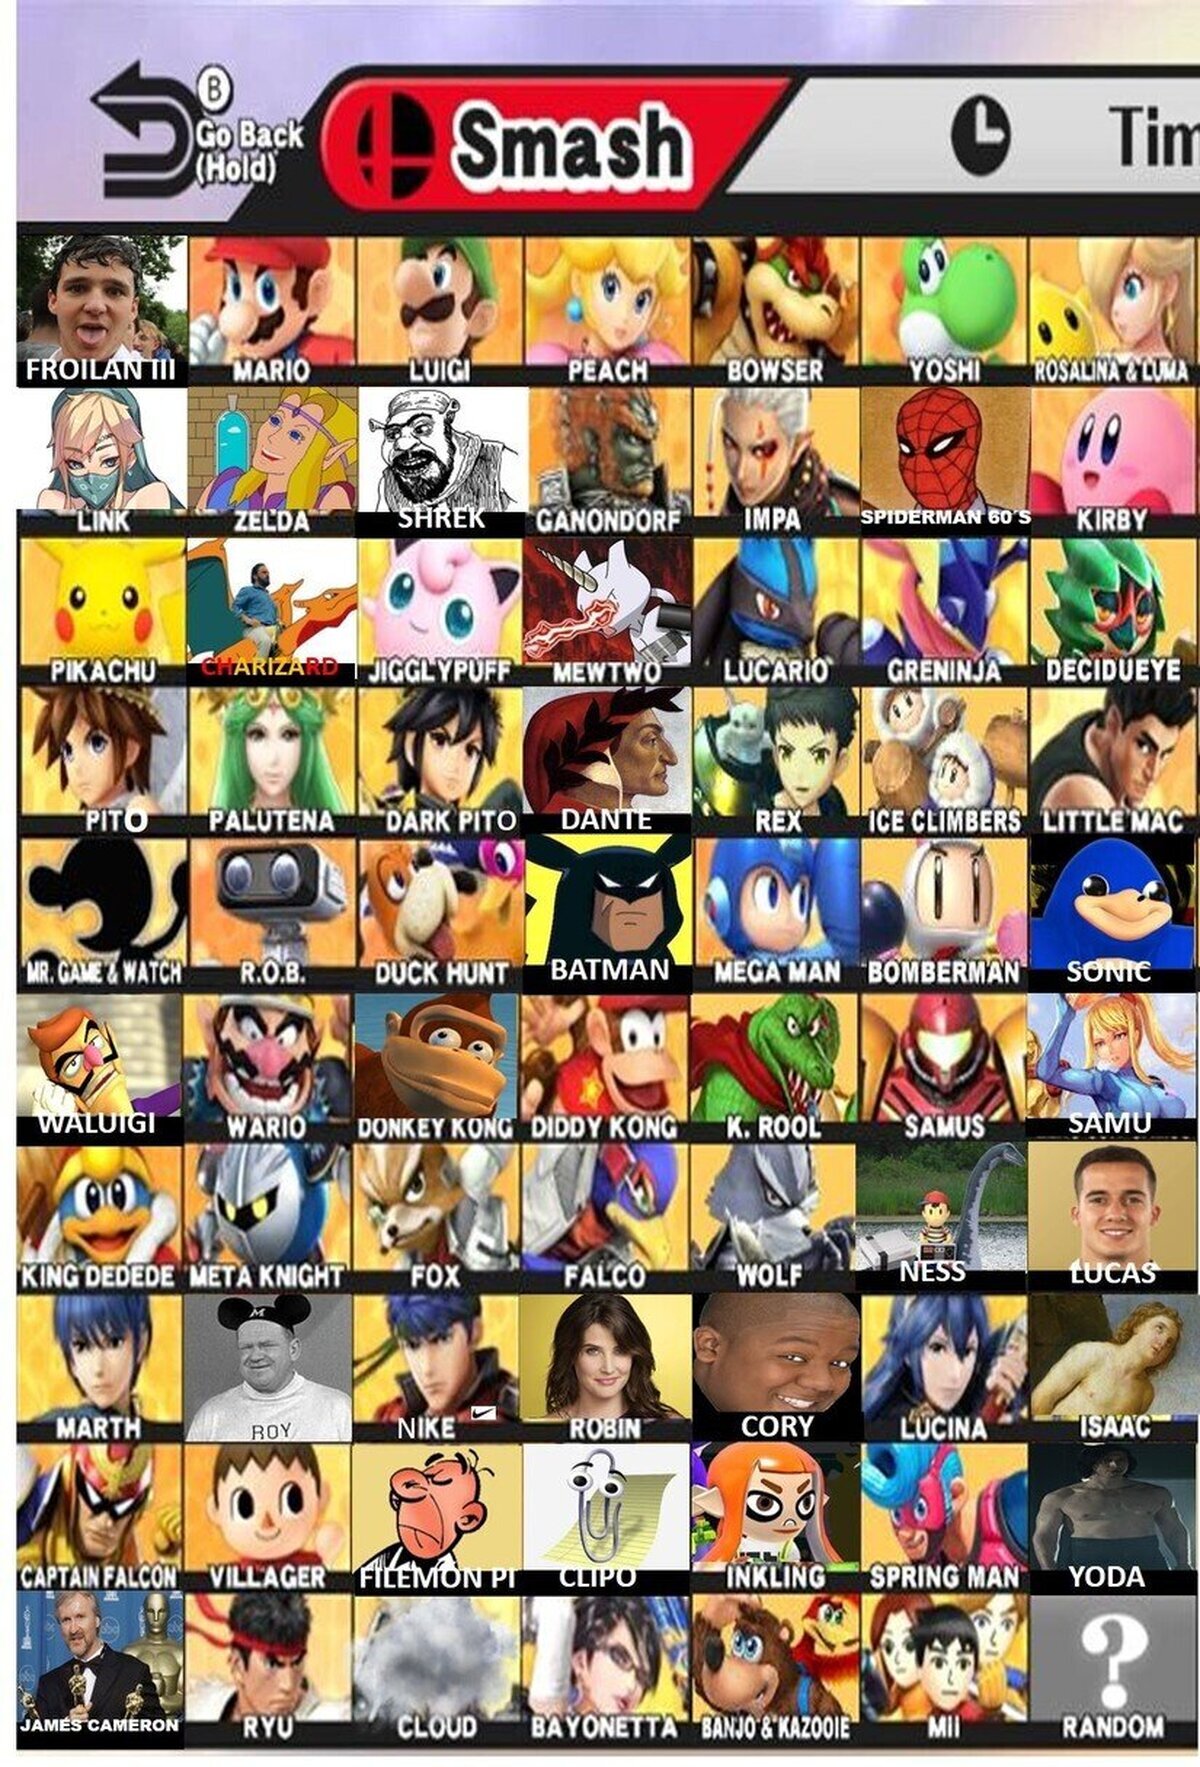 Con cada nuevo Smash vienen las filtraciones de personajes